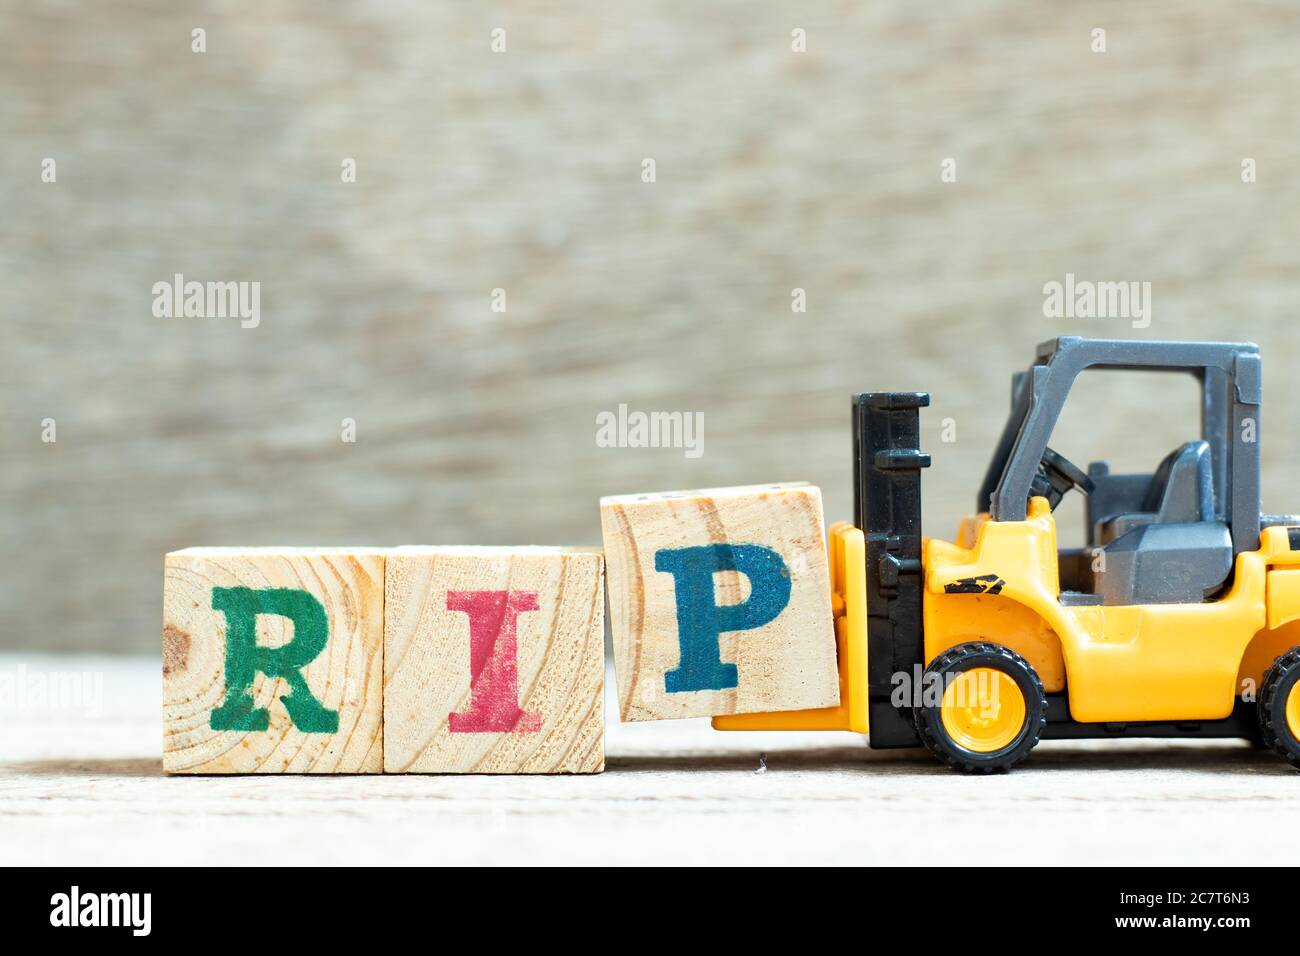 Spielzeug Gabelstapler halten Buchstabenblock P, um Wort RIP (Abkürzung für Ruhe in Frieden) auf Holzhintergrund zu vervollständigen Stockfoto